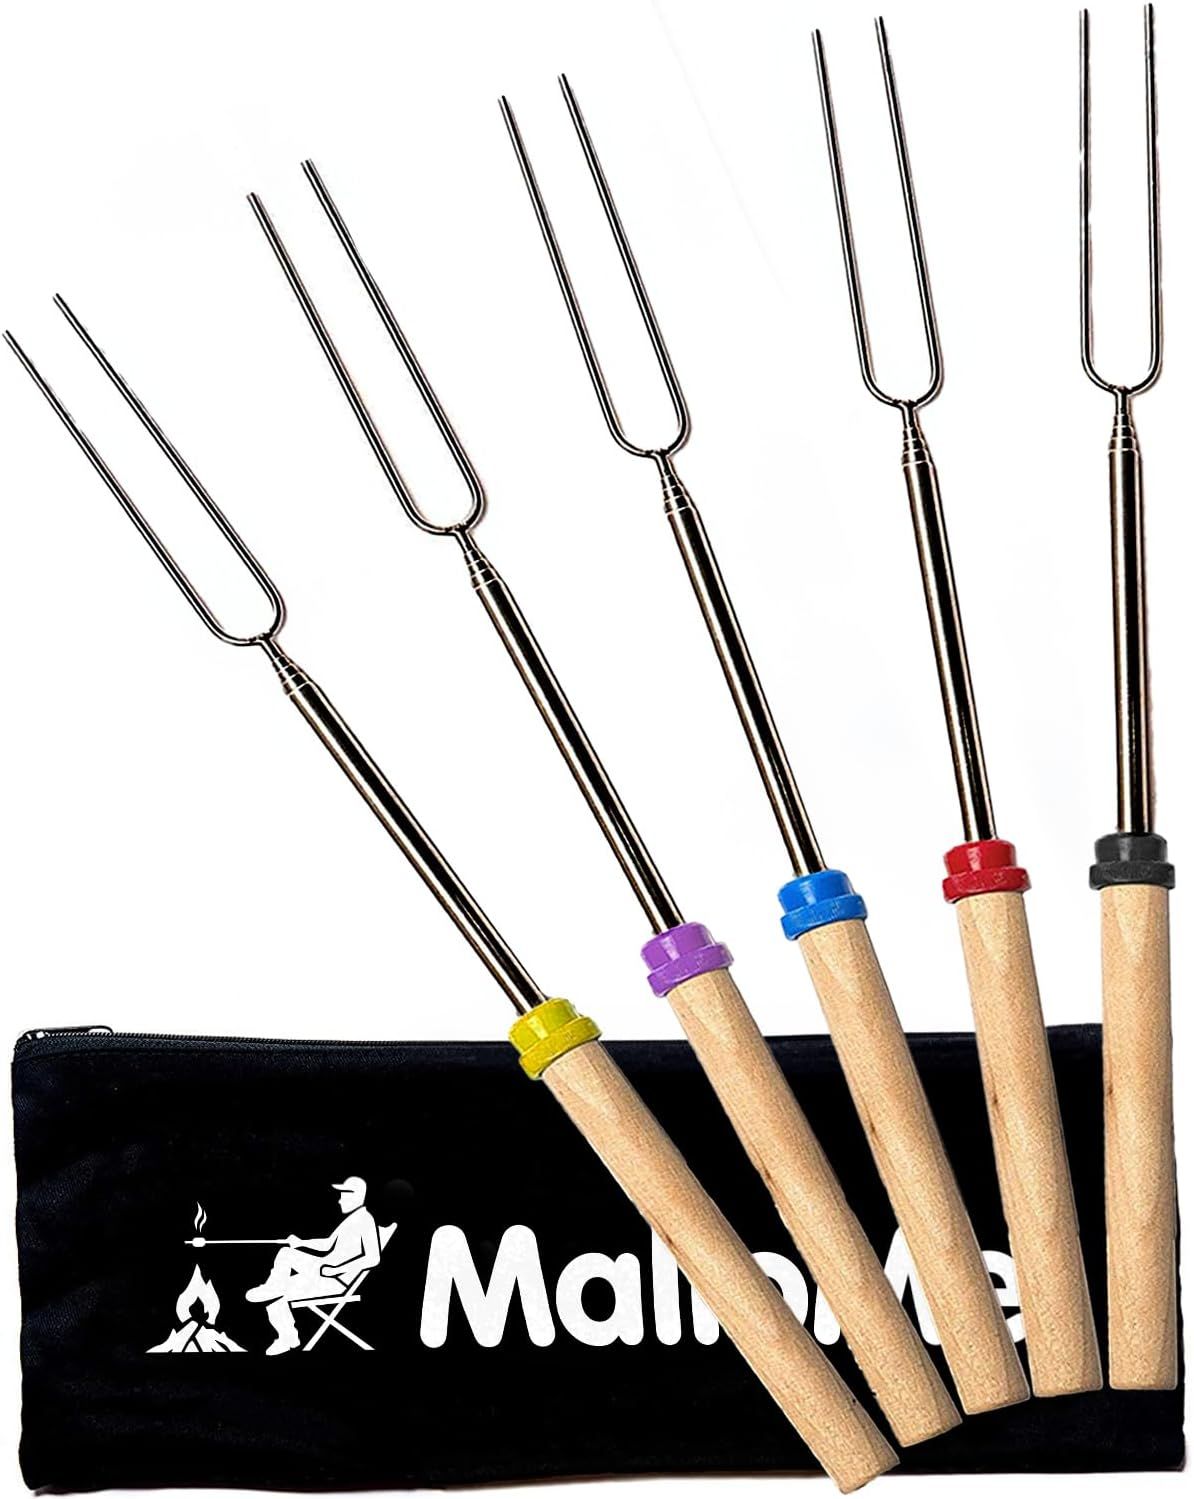 MalloMe Smores Sticks - Marshmallow Sticks For Fire Pit Long - Smores Kit For Fire Pit Marshmallo... | Amazon (US)